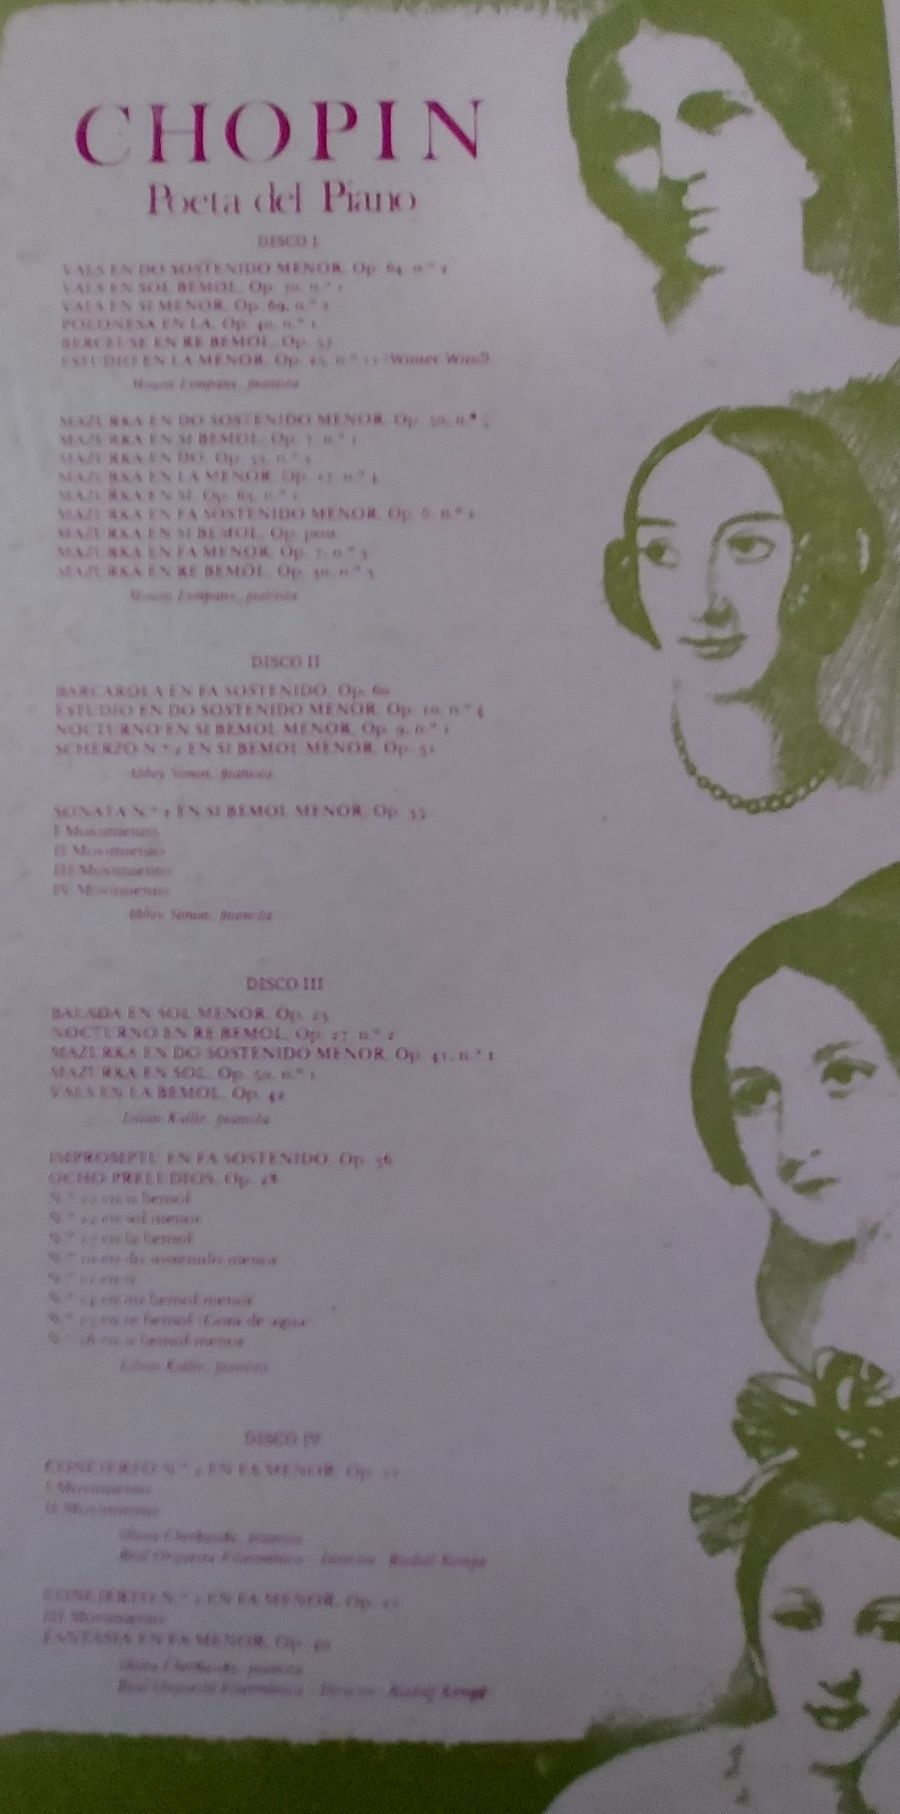 Caixa com 4 LP de vinil de Chopin